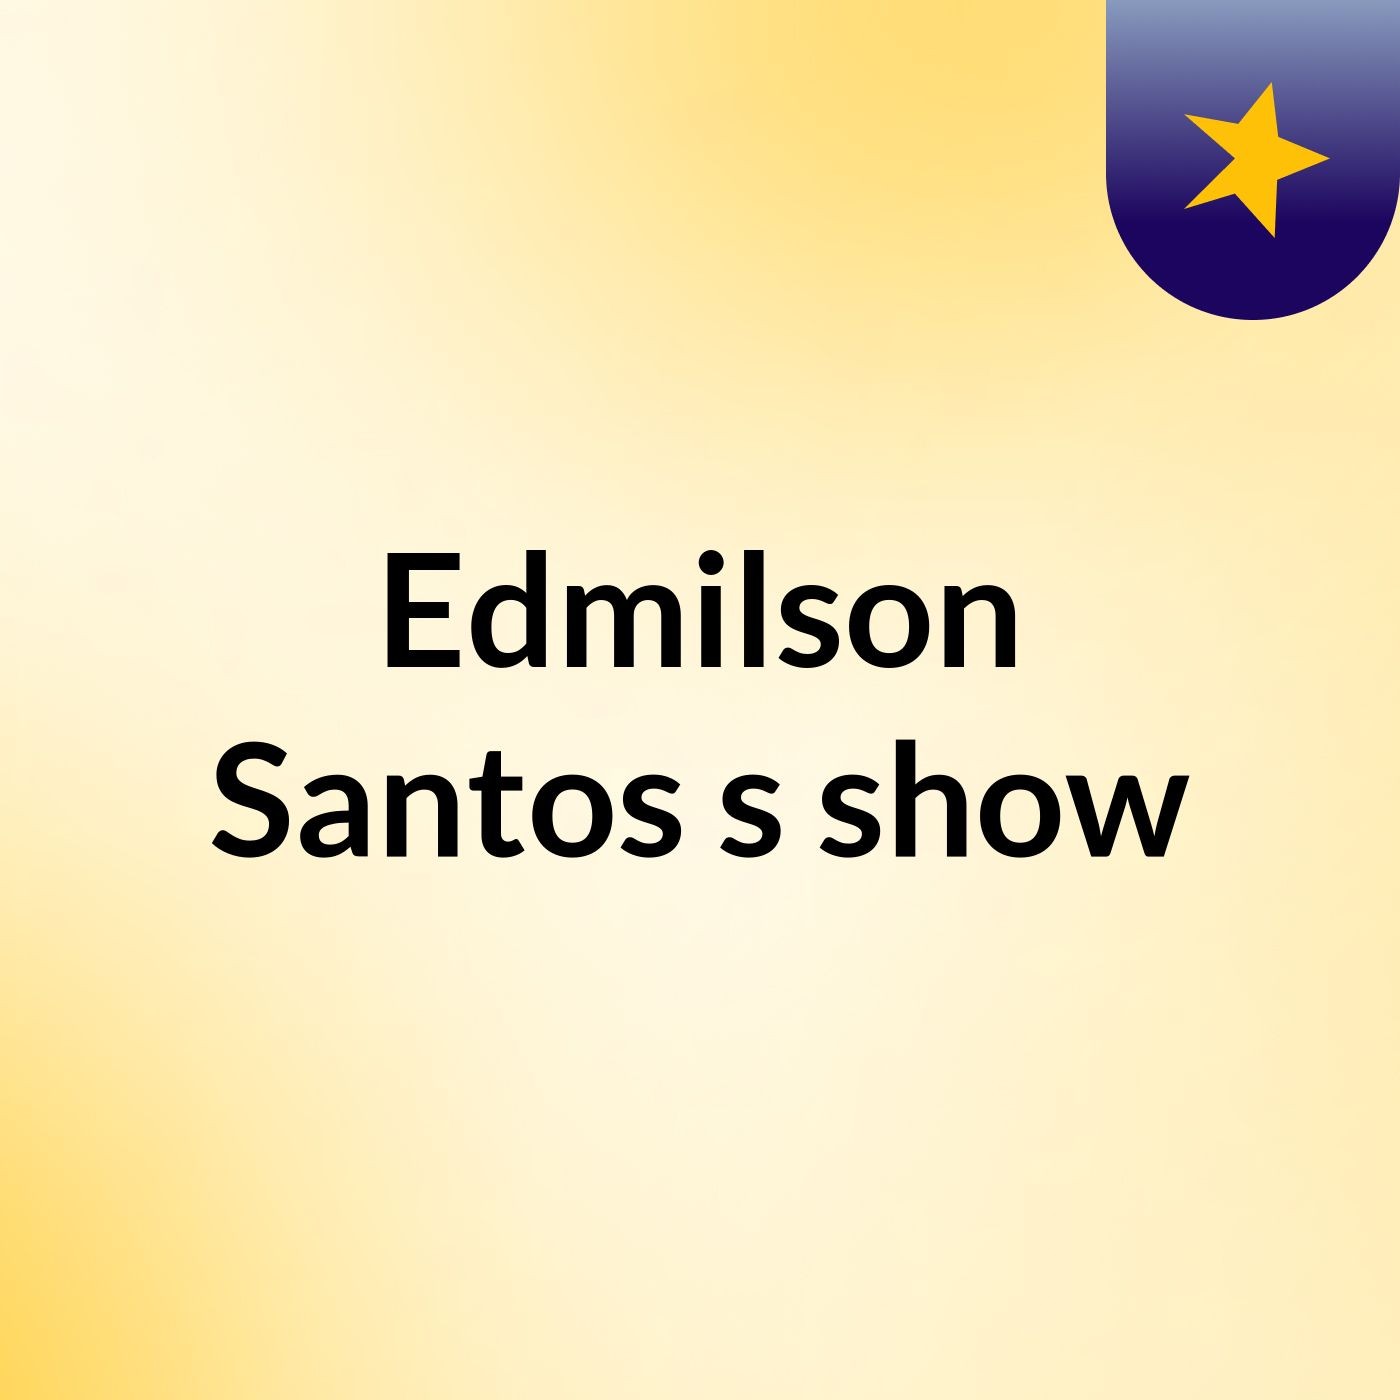 Edmilson Santos's show